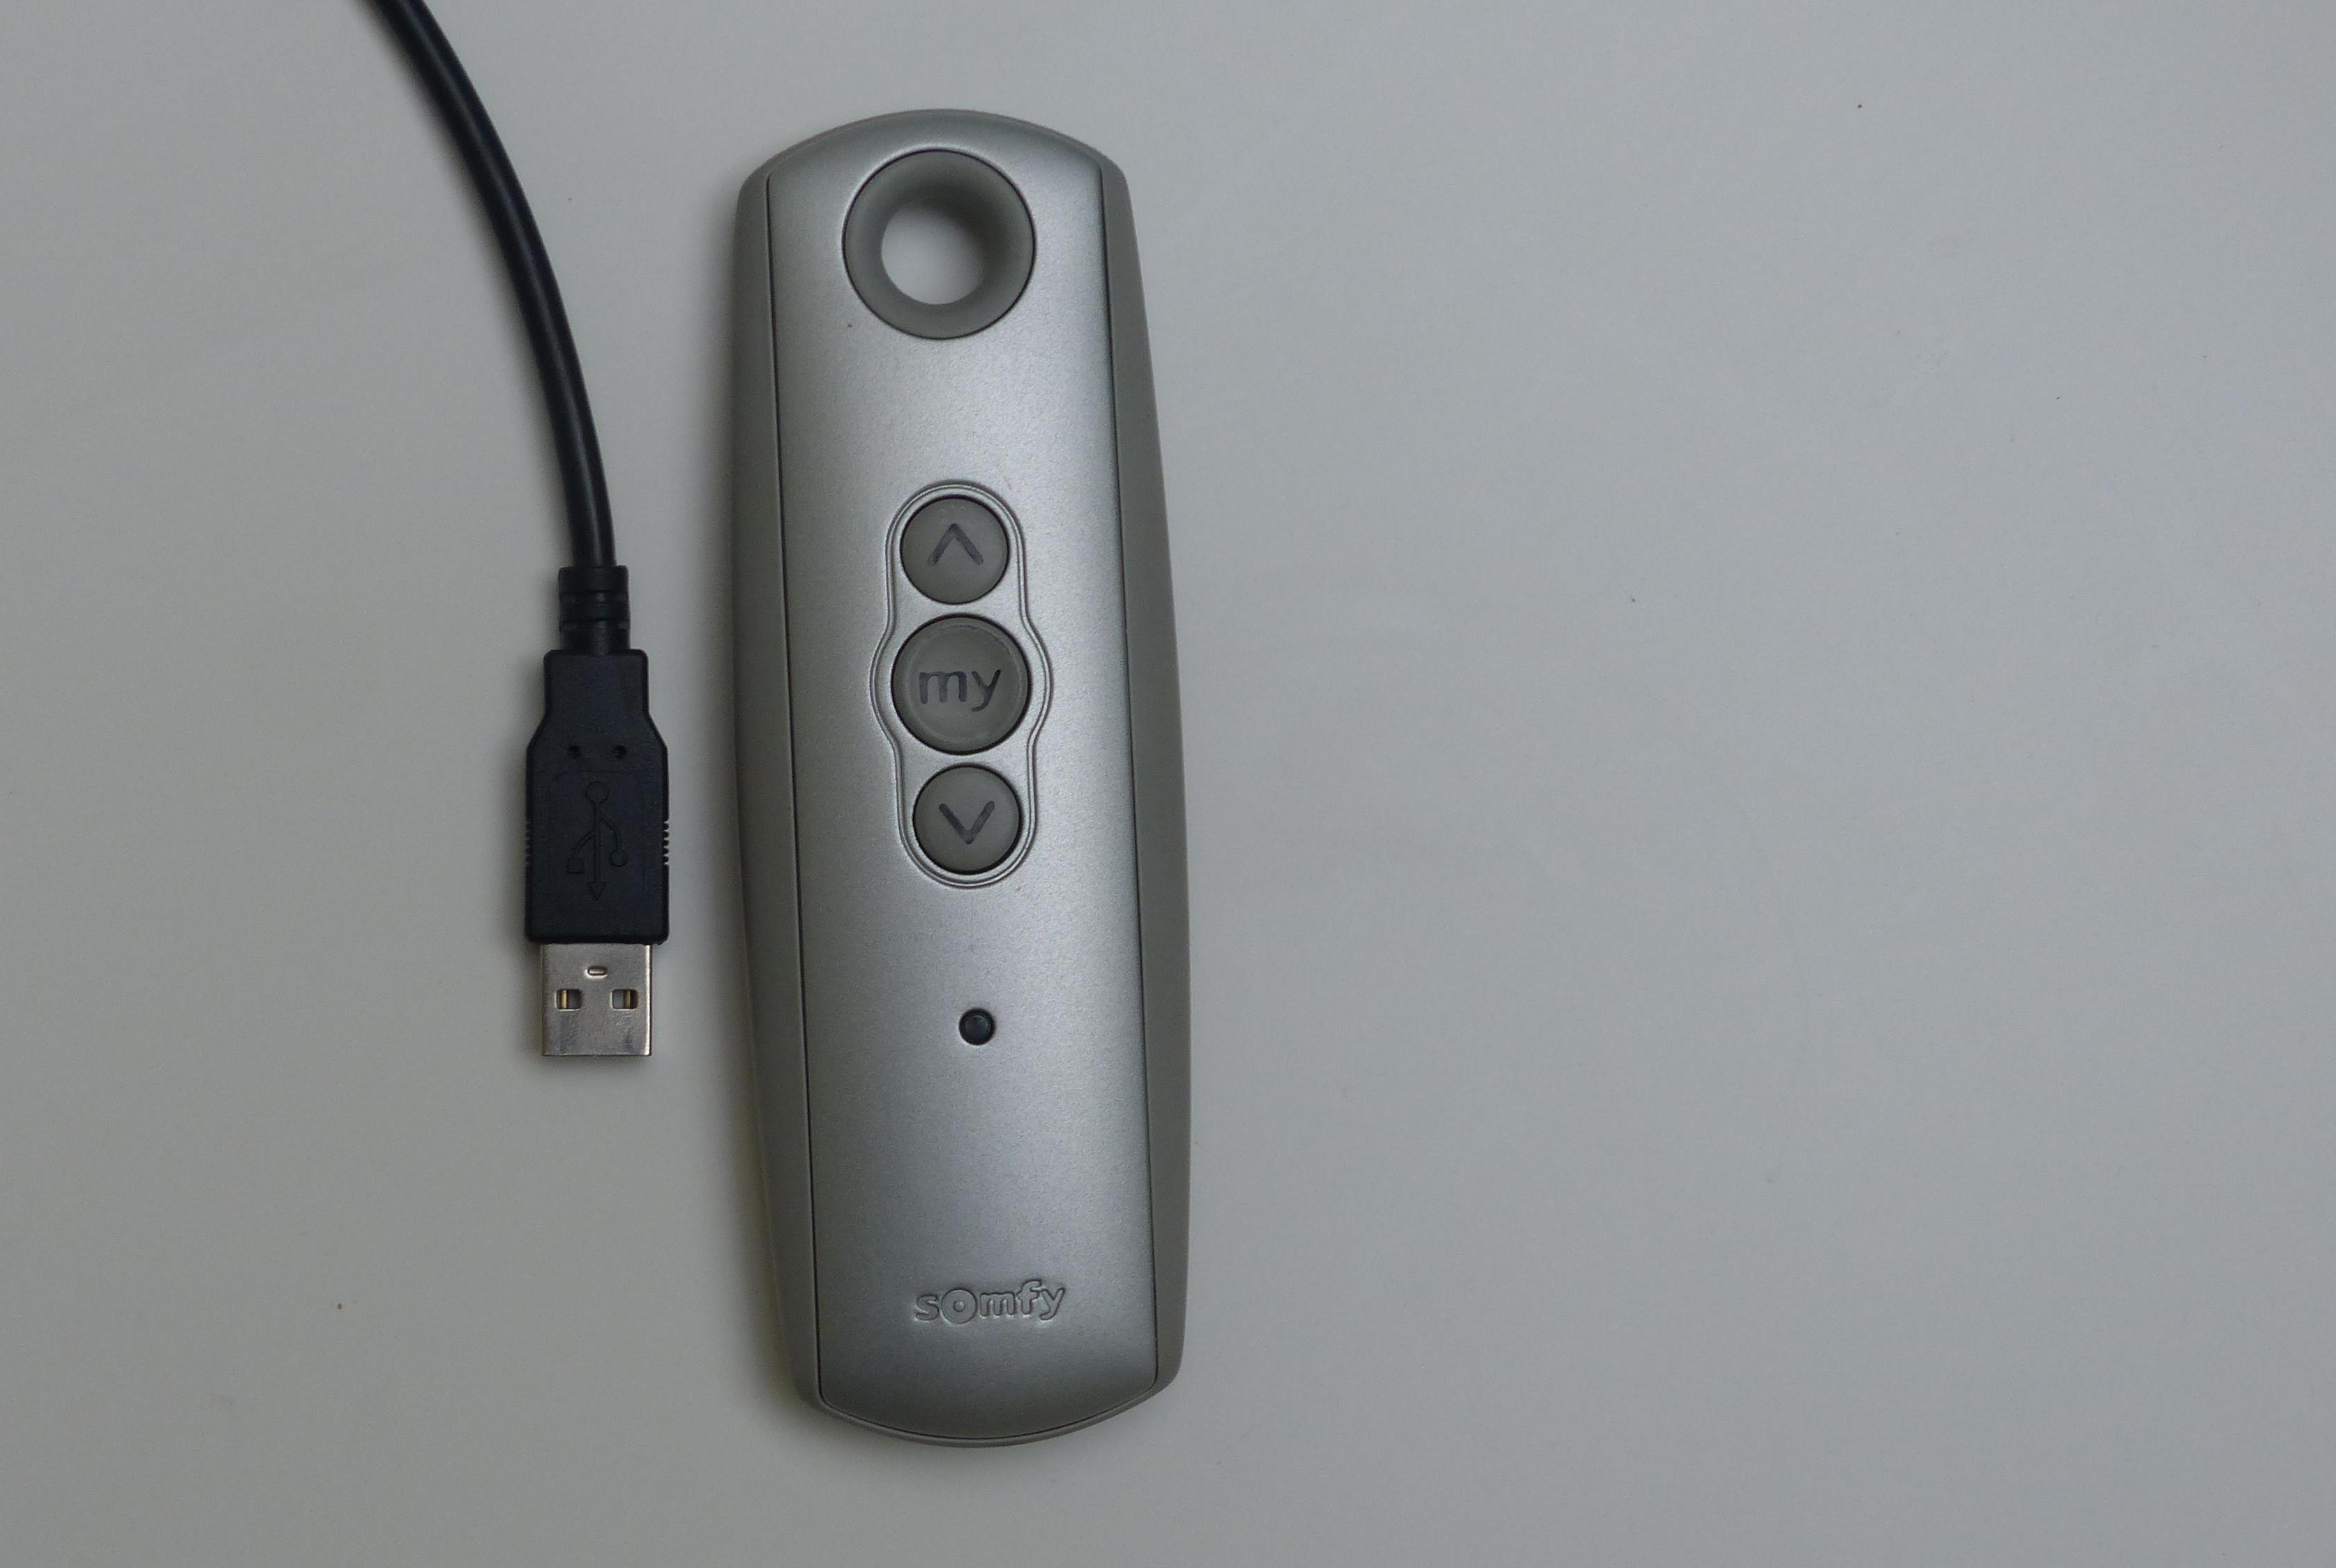 Somfy USB Remote Control